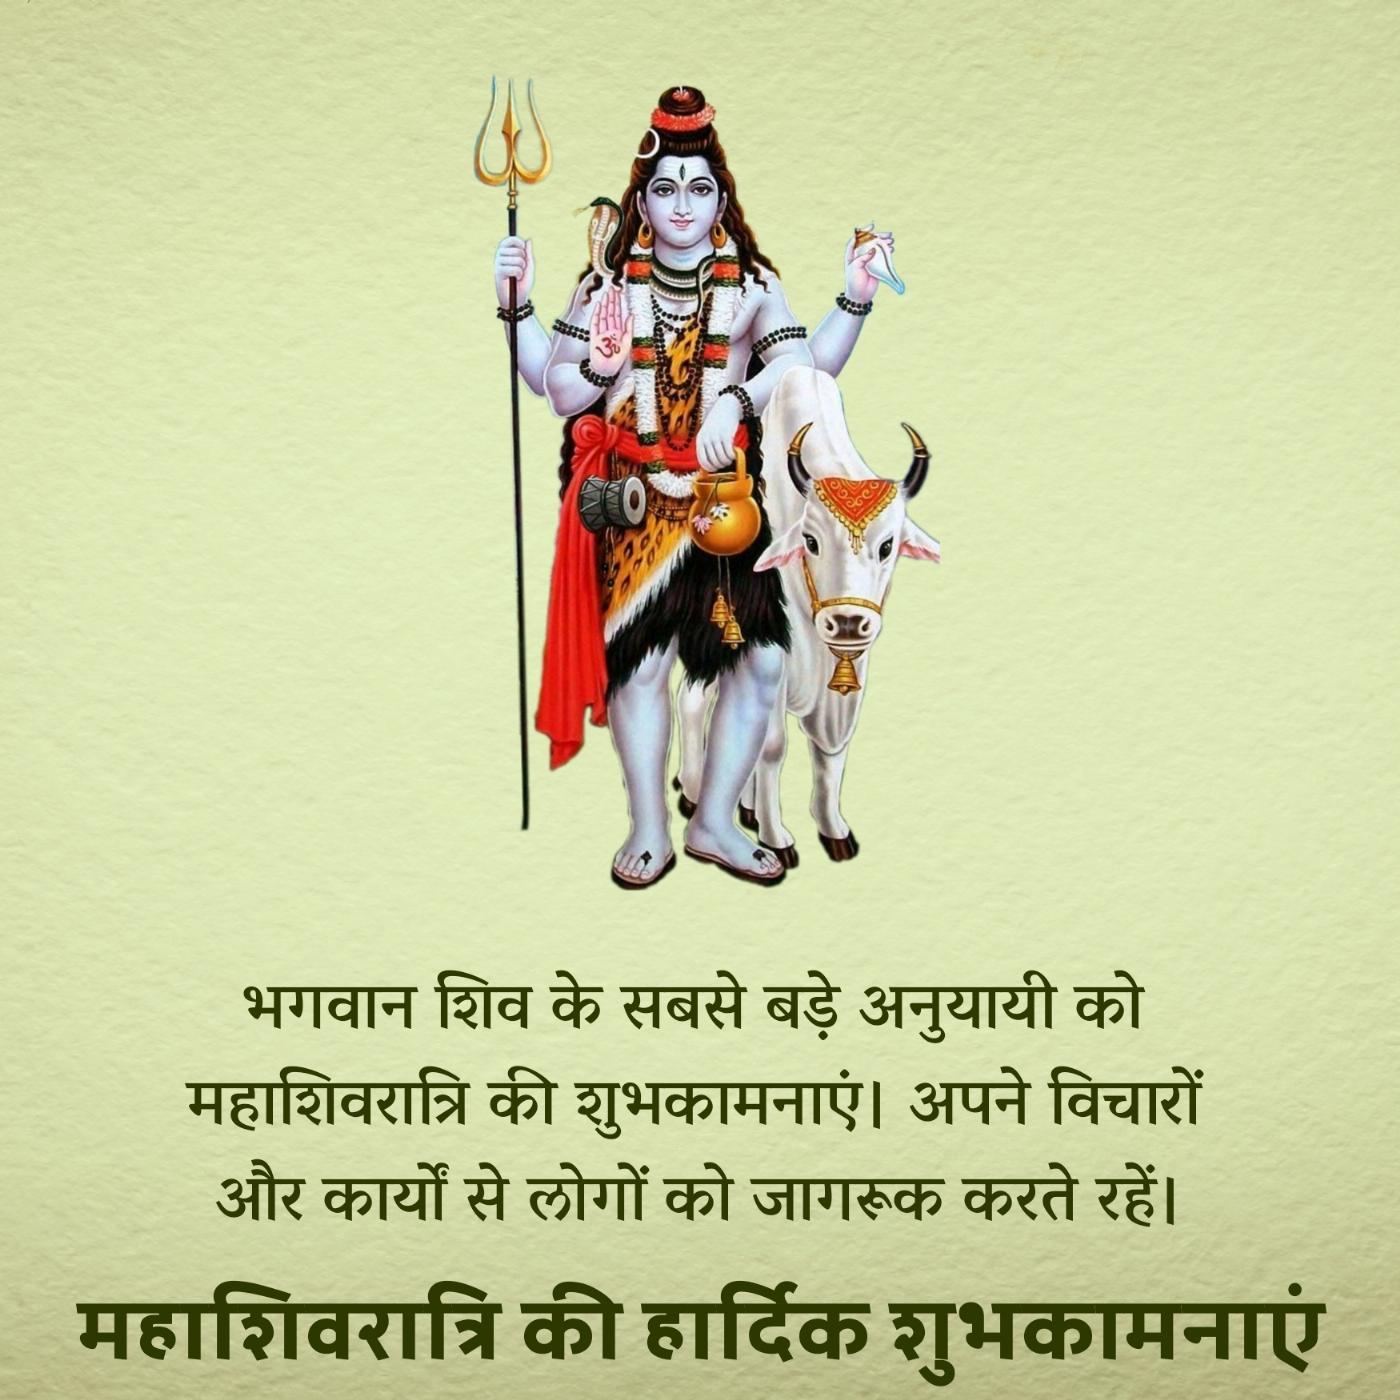 भगवान शिव के सबसे बड़े अनुयायी को महाशिवरात्रि की शुभकामनाएं